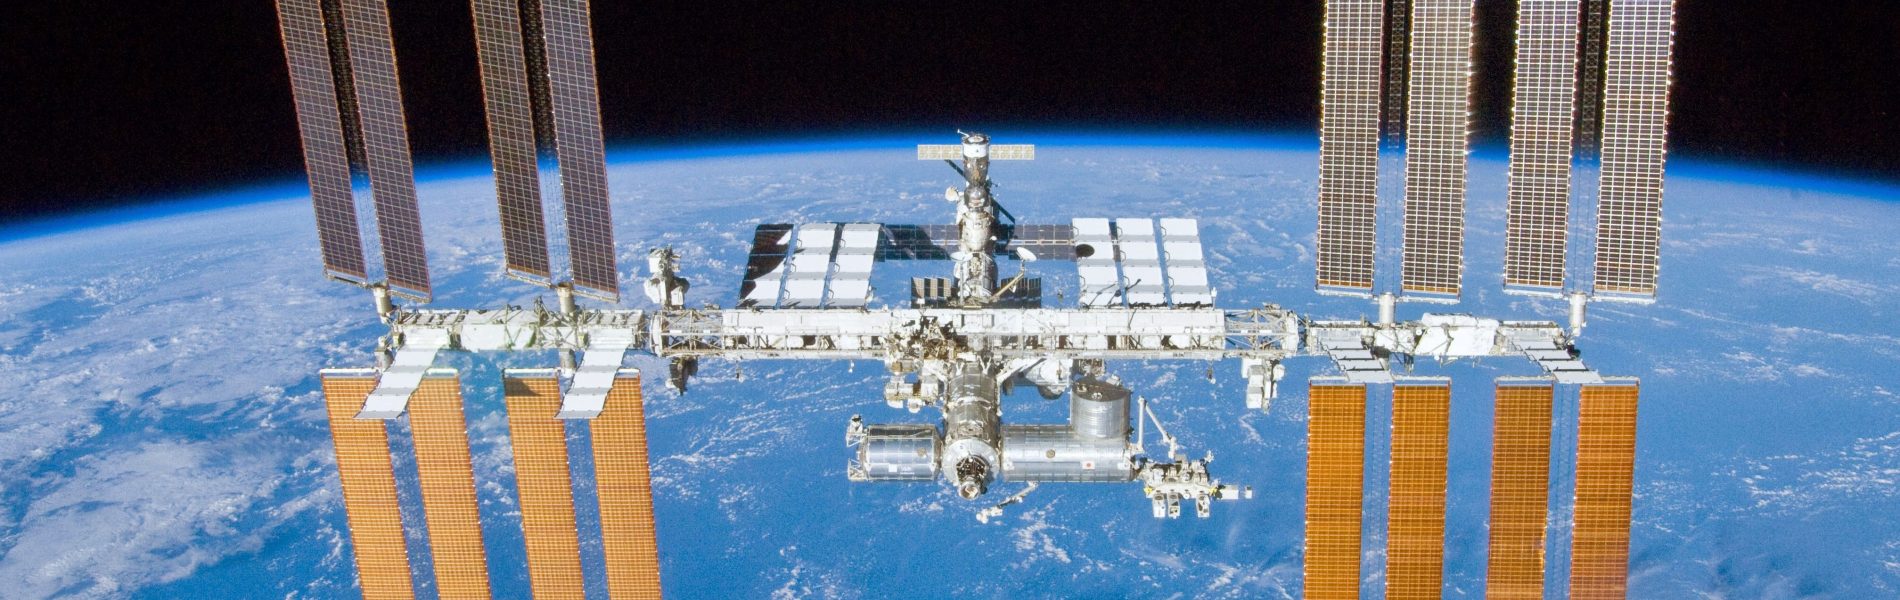 Auf dem Foto ist die Internationale Raumstation zu sehen.